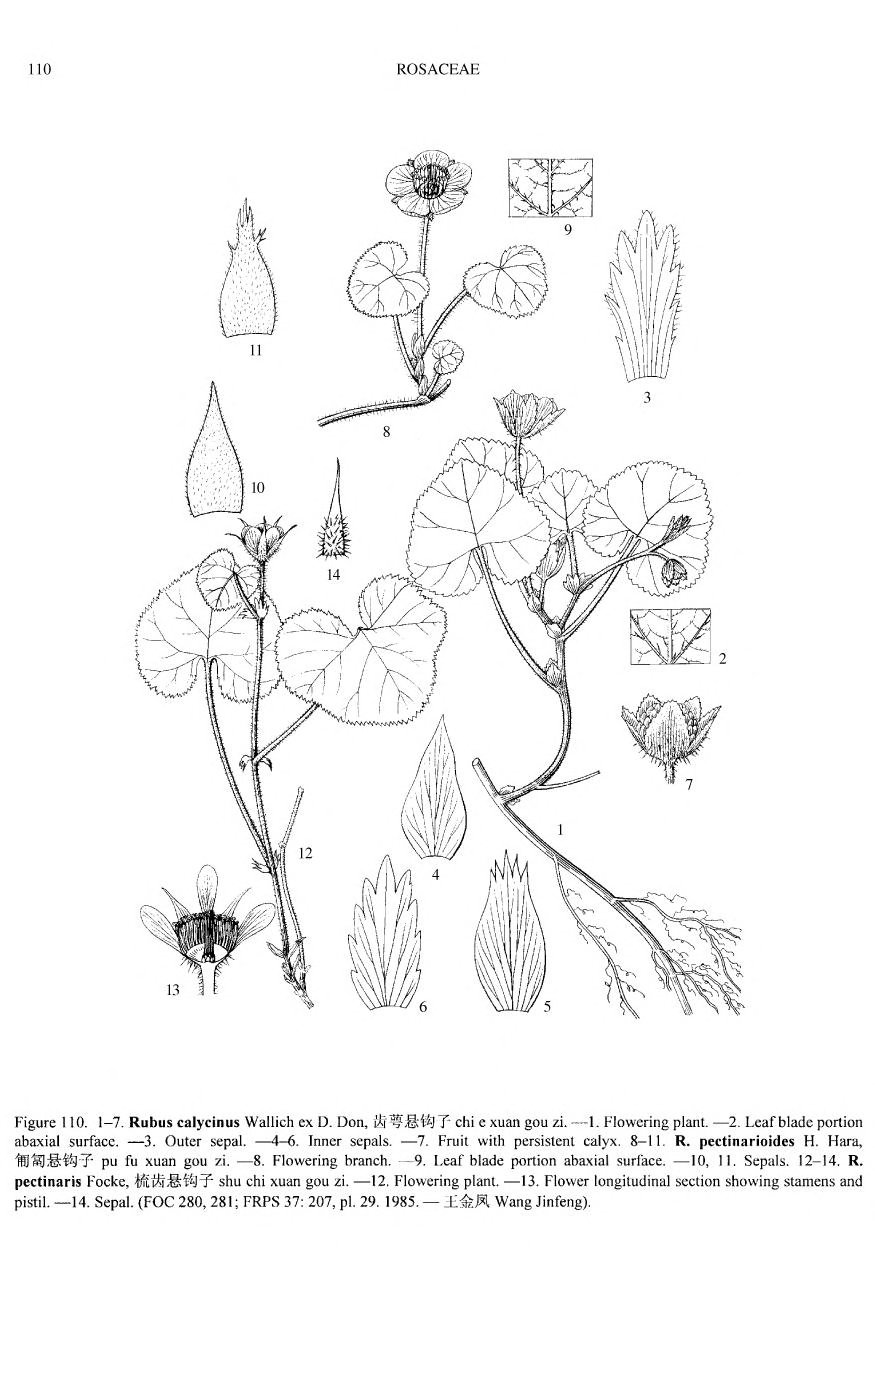 Rubus calycinus